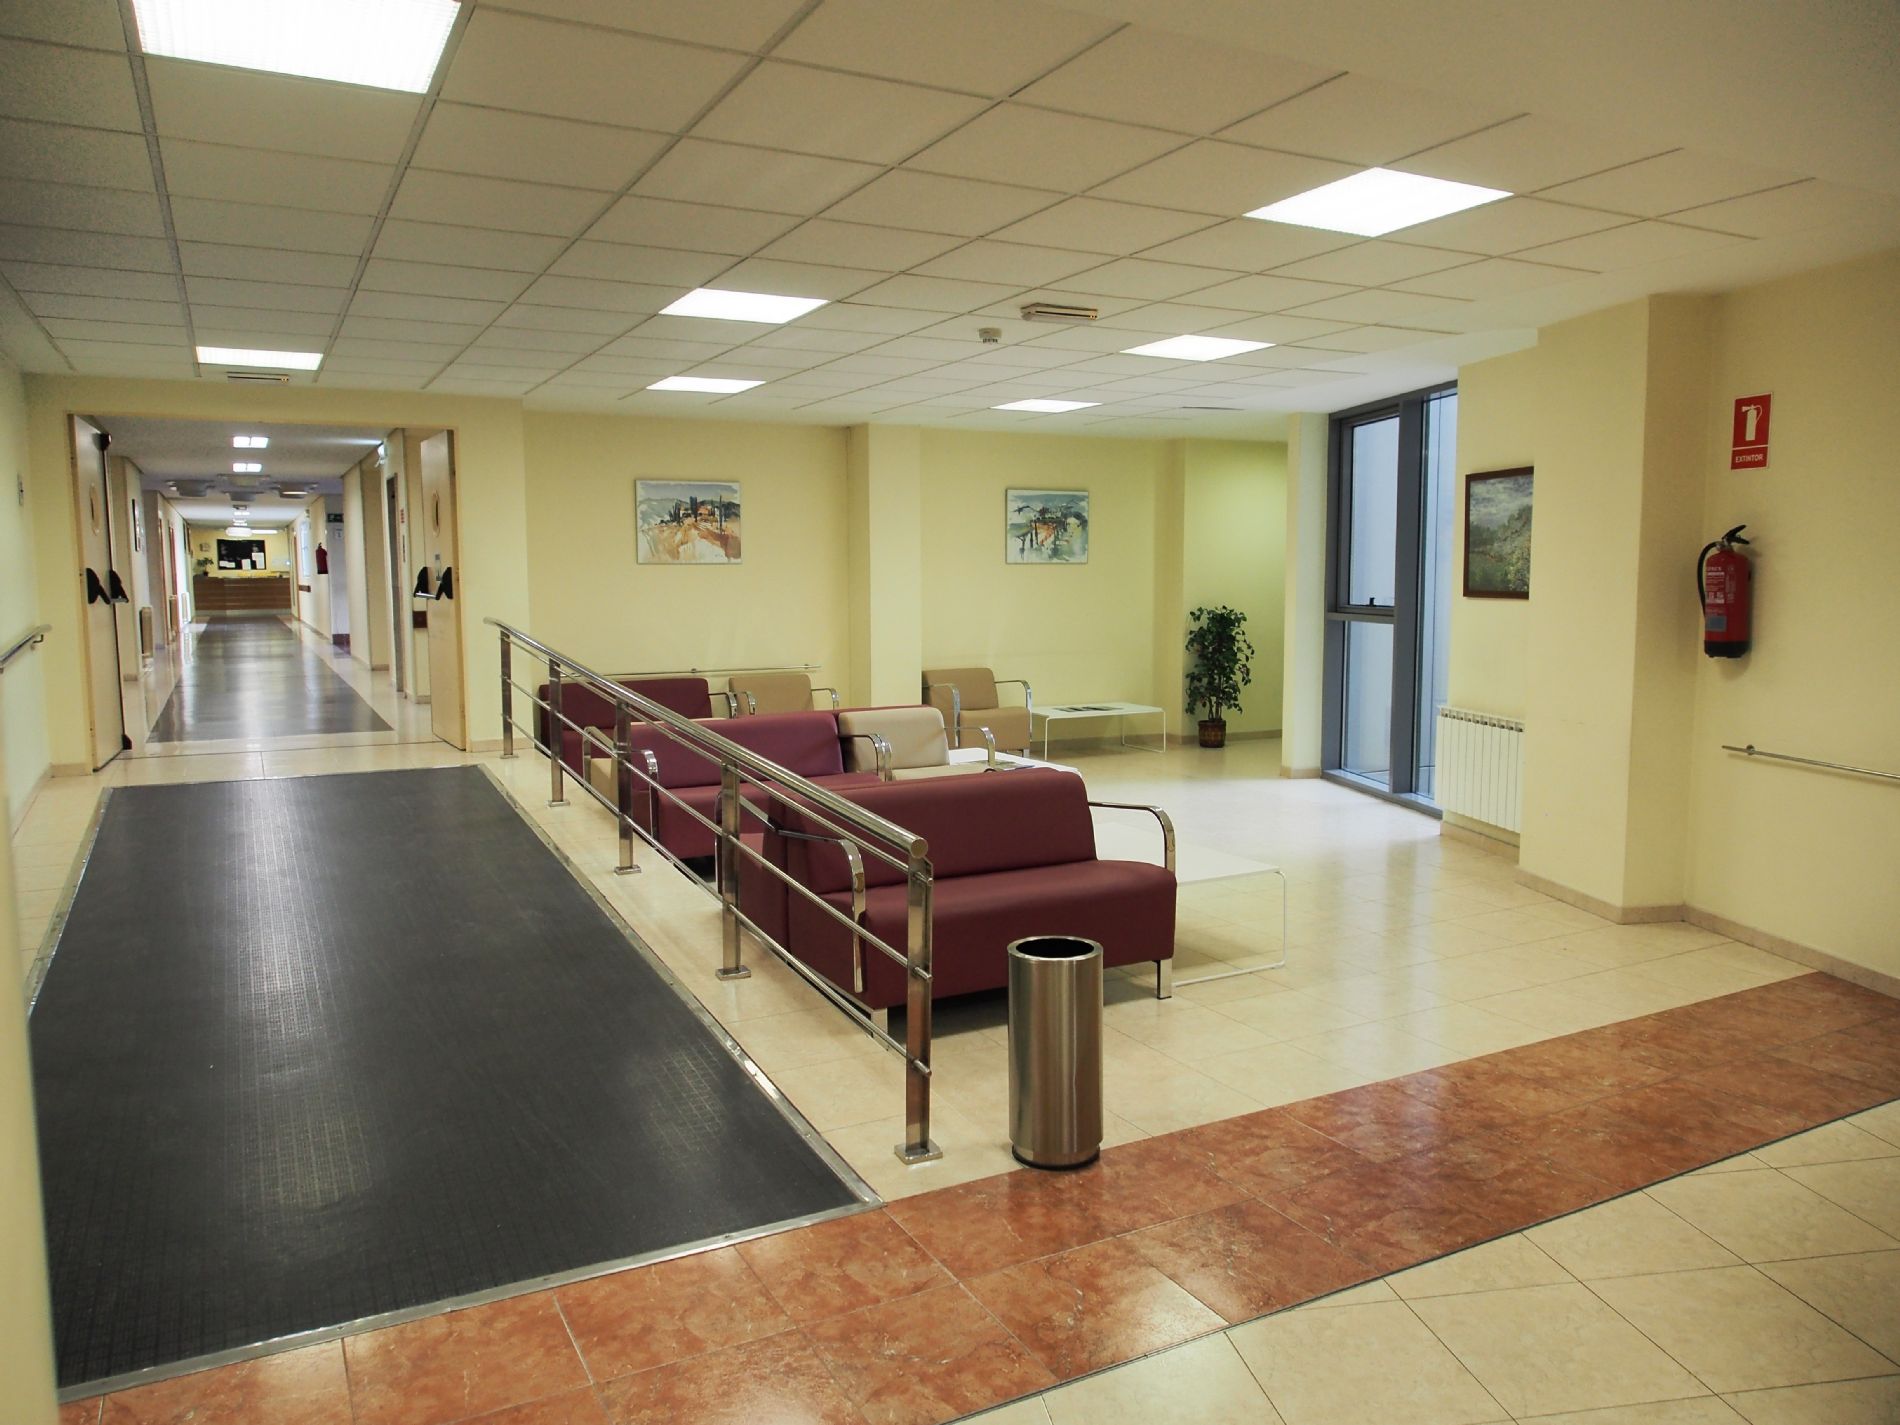 Área de consultas de la primera planta de consultas del Centro Médico de Asturias.